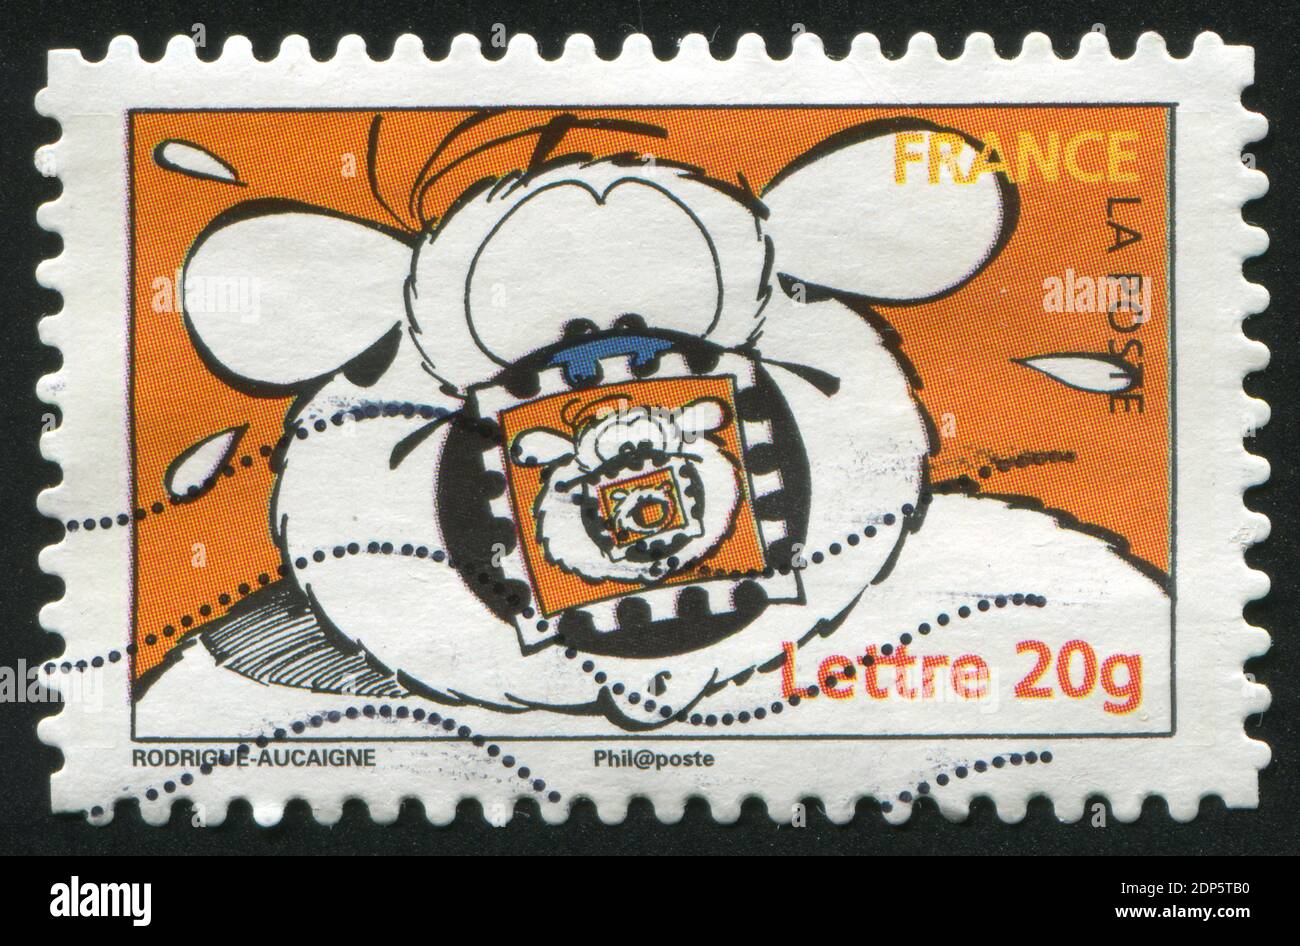 FRANCIA - CIRCA 2006: Francobollo stampato dalla Francia, spettacoli Cubitus, di Michel Rodrigue e Pierre Aucaigne, circa 2006 Foto Stock